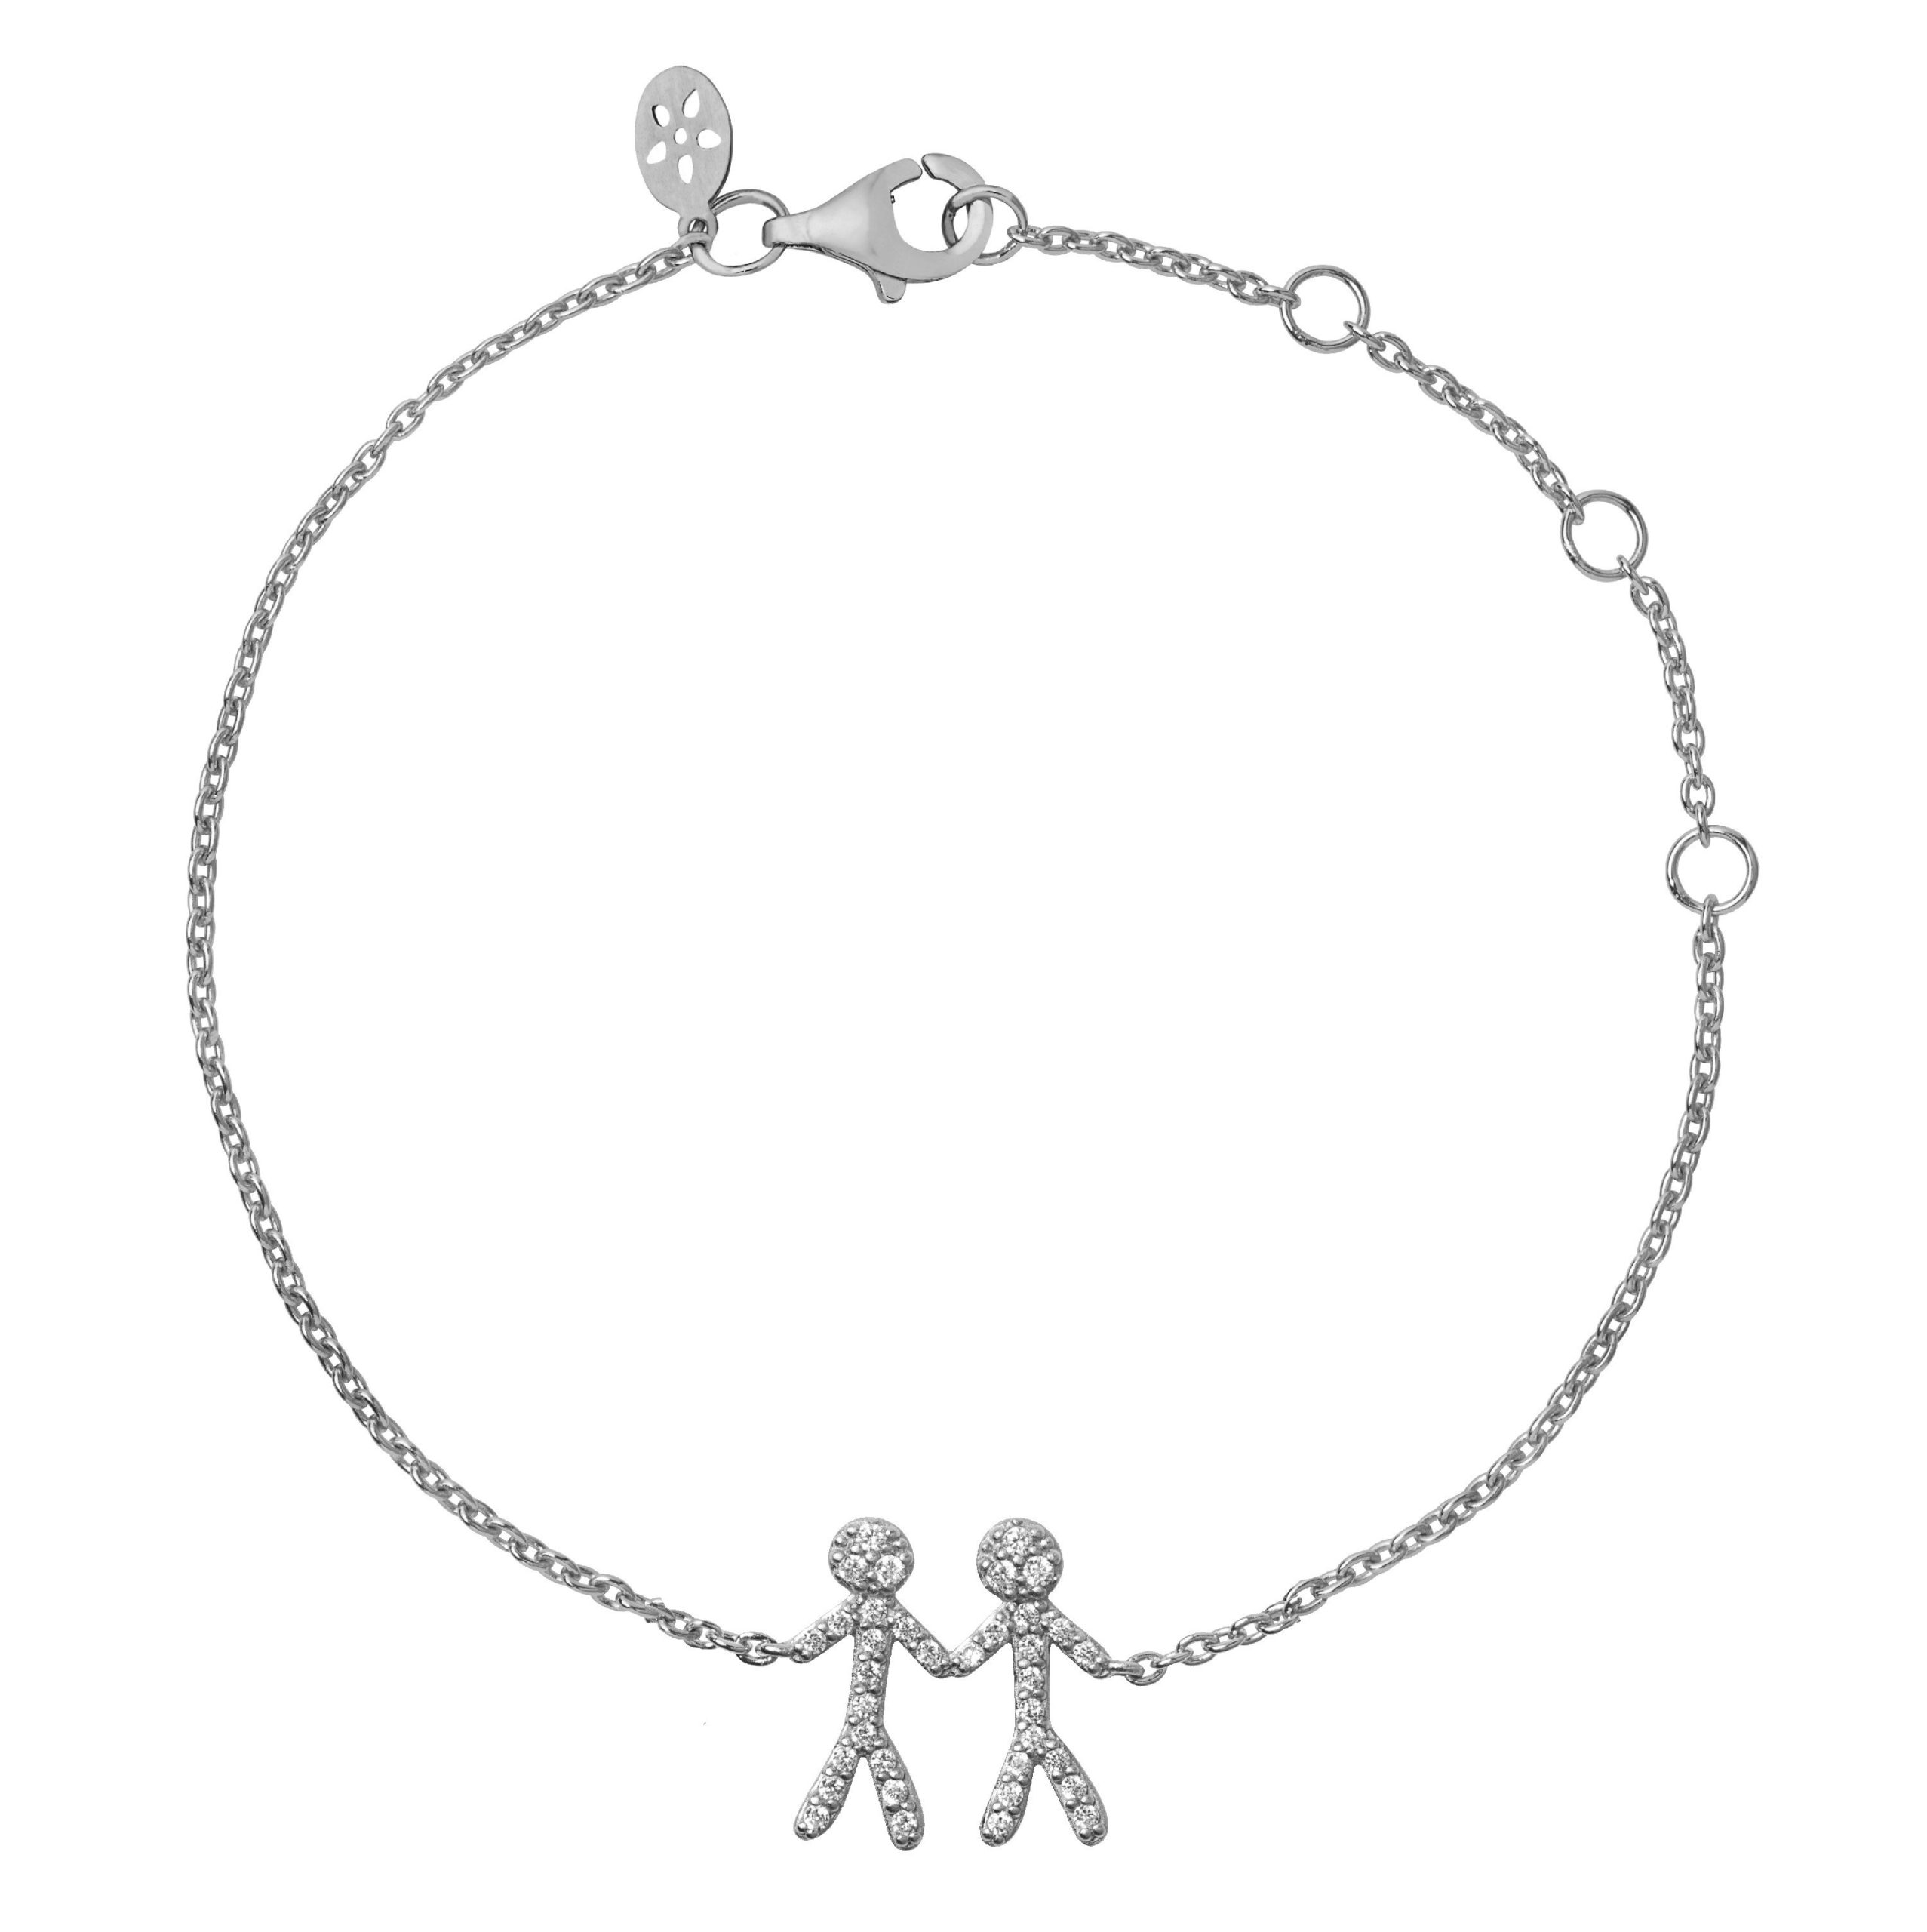 Together - My Love armbånd - - Ure-smykker din lokale urmager og guldsmed - køb online